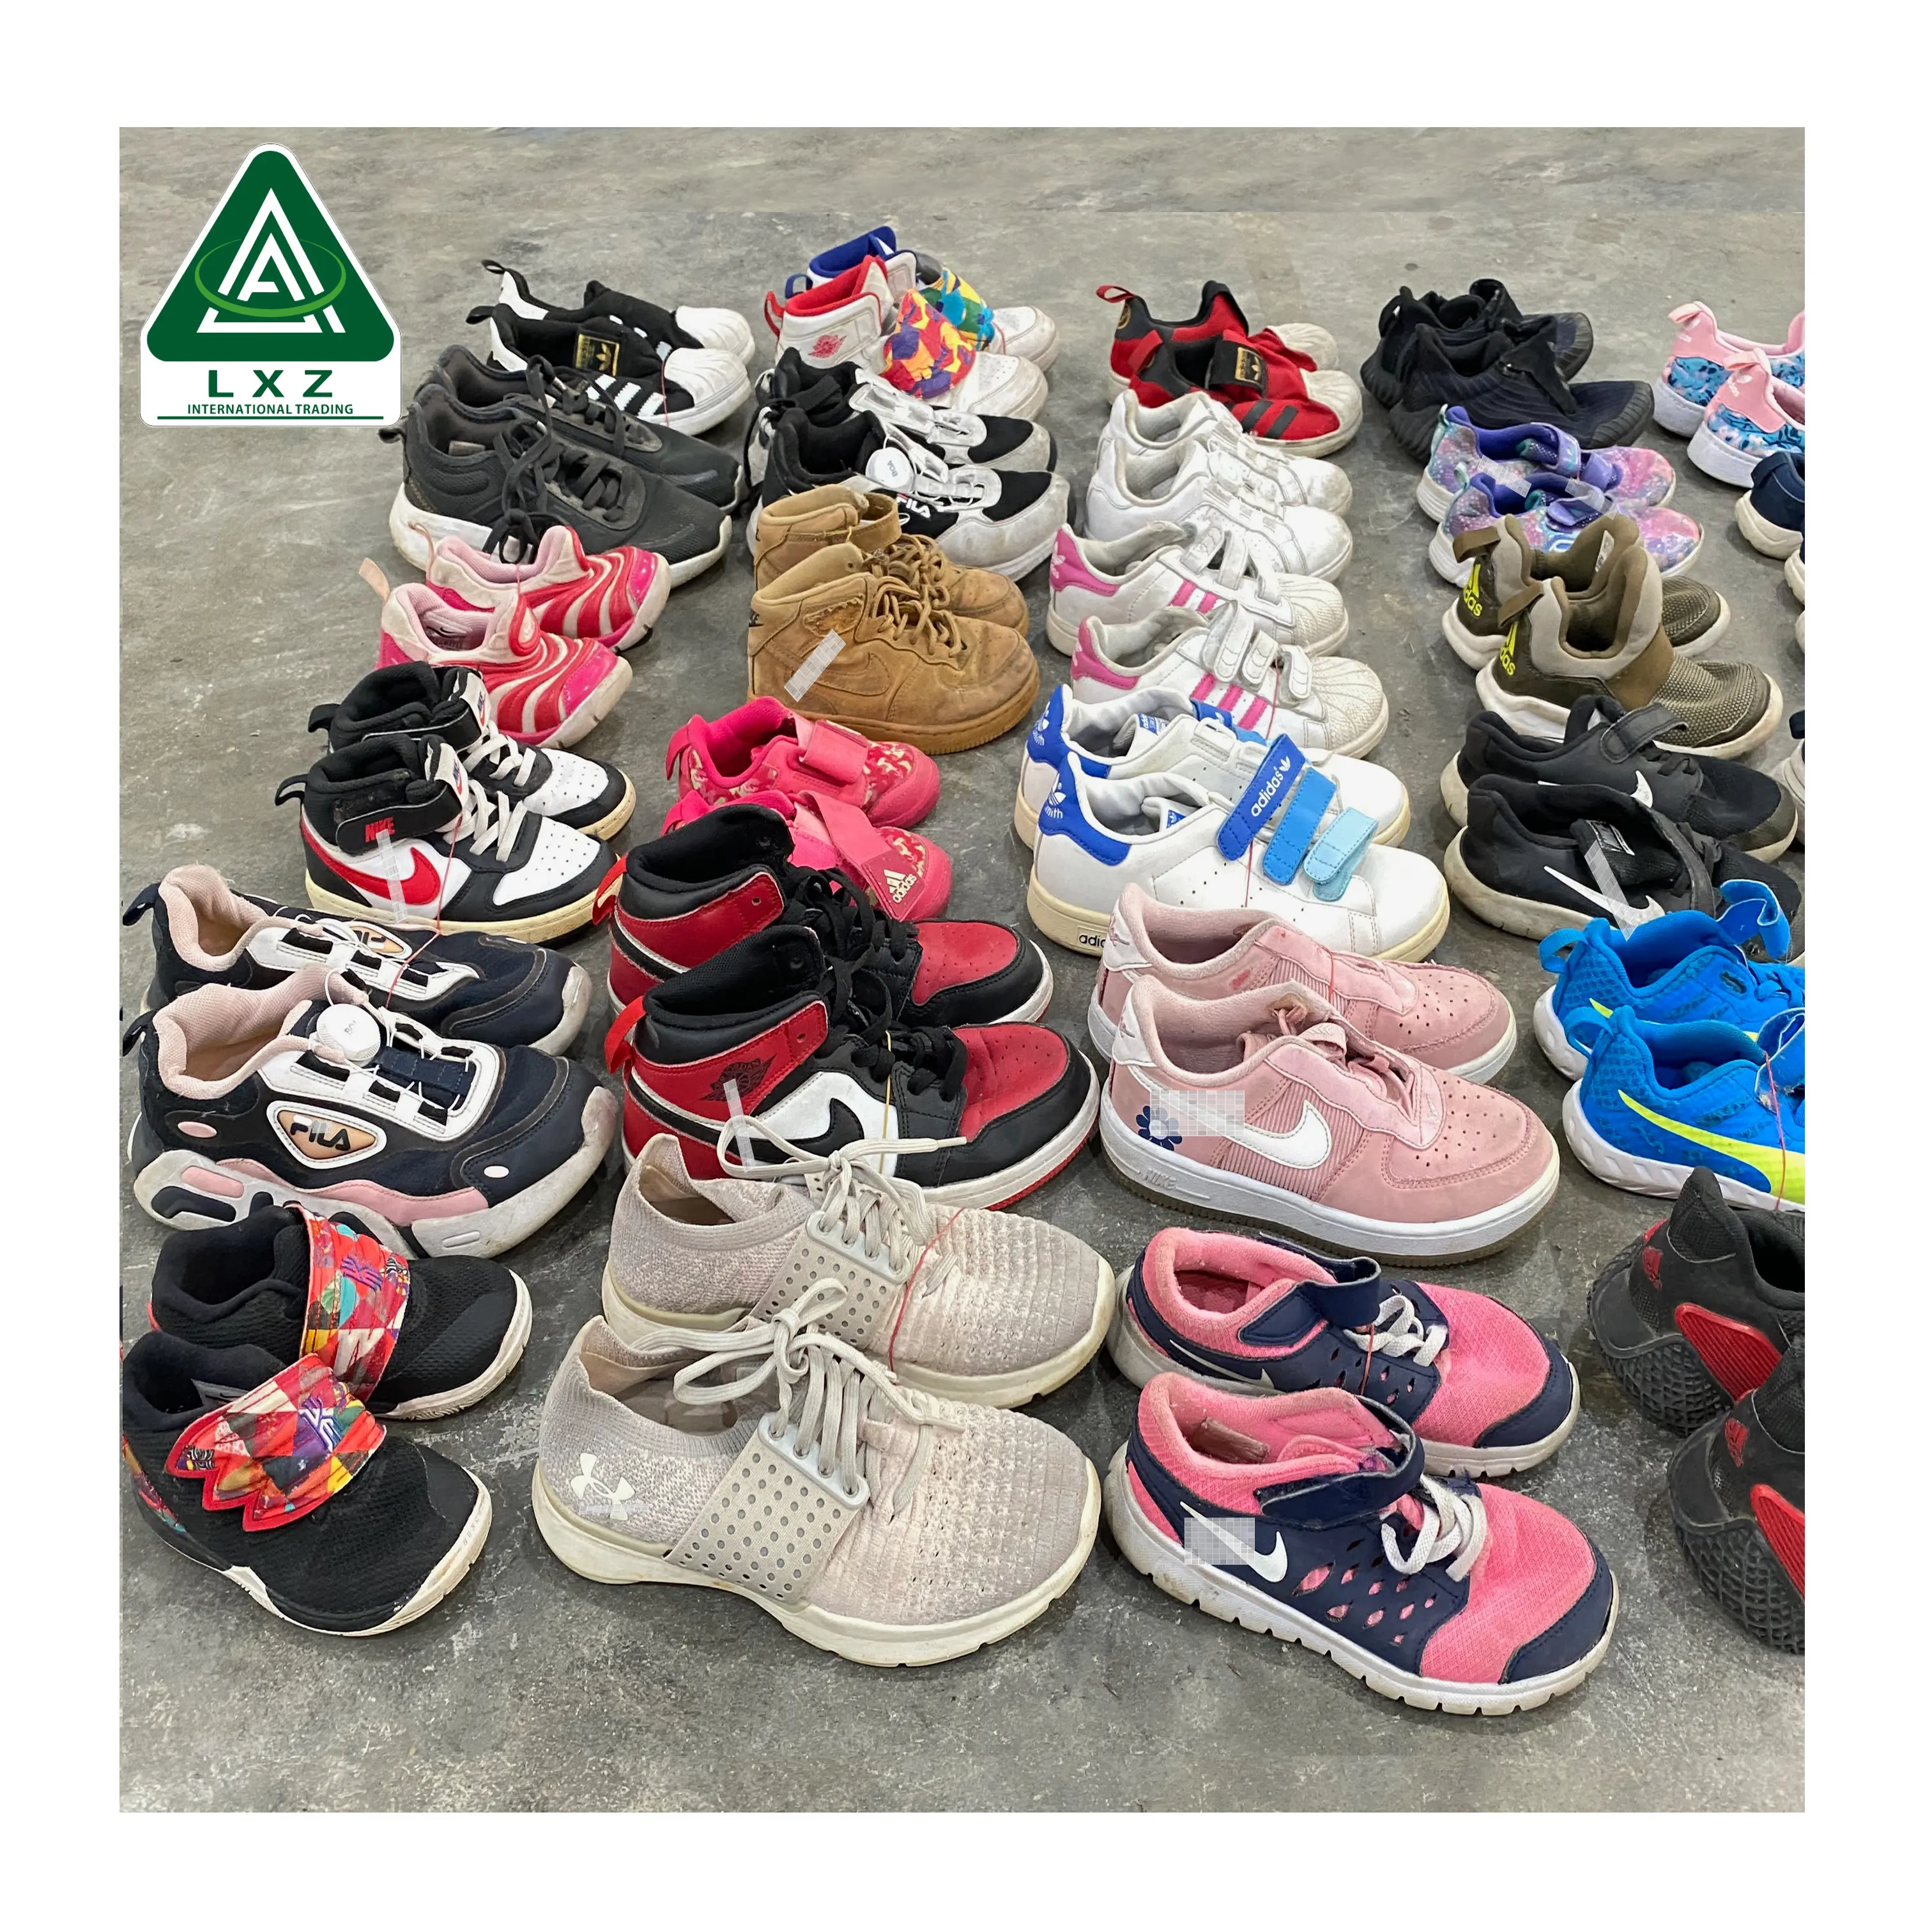 Yüksek kaliteli kullanılan ayakkabı uluslararası marka çocuk ayakkabı toptan satış için çocuk